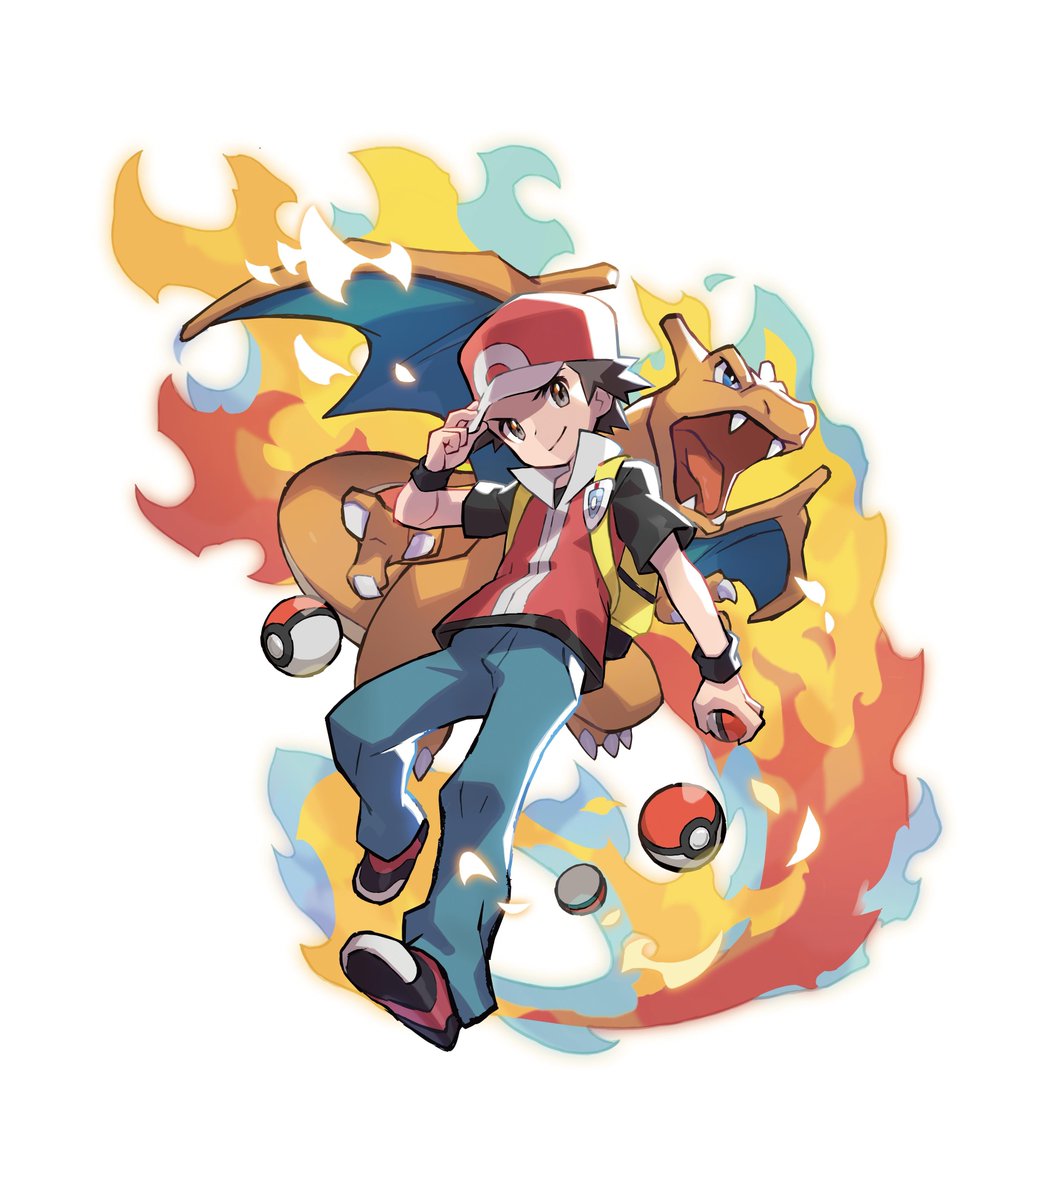 PokéJungle: Pokémon Game & Merch News on X: Art of the Poké Ball